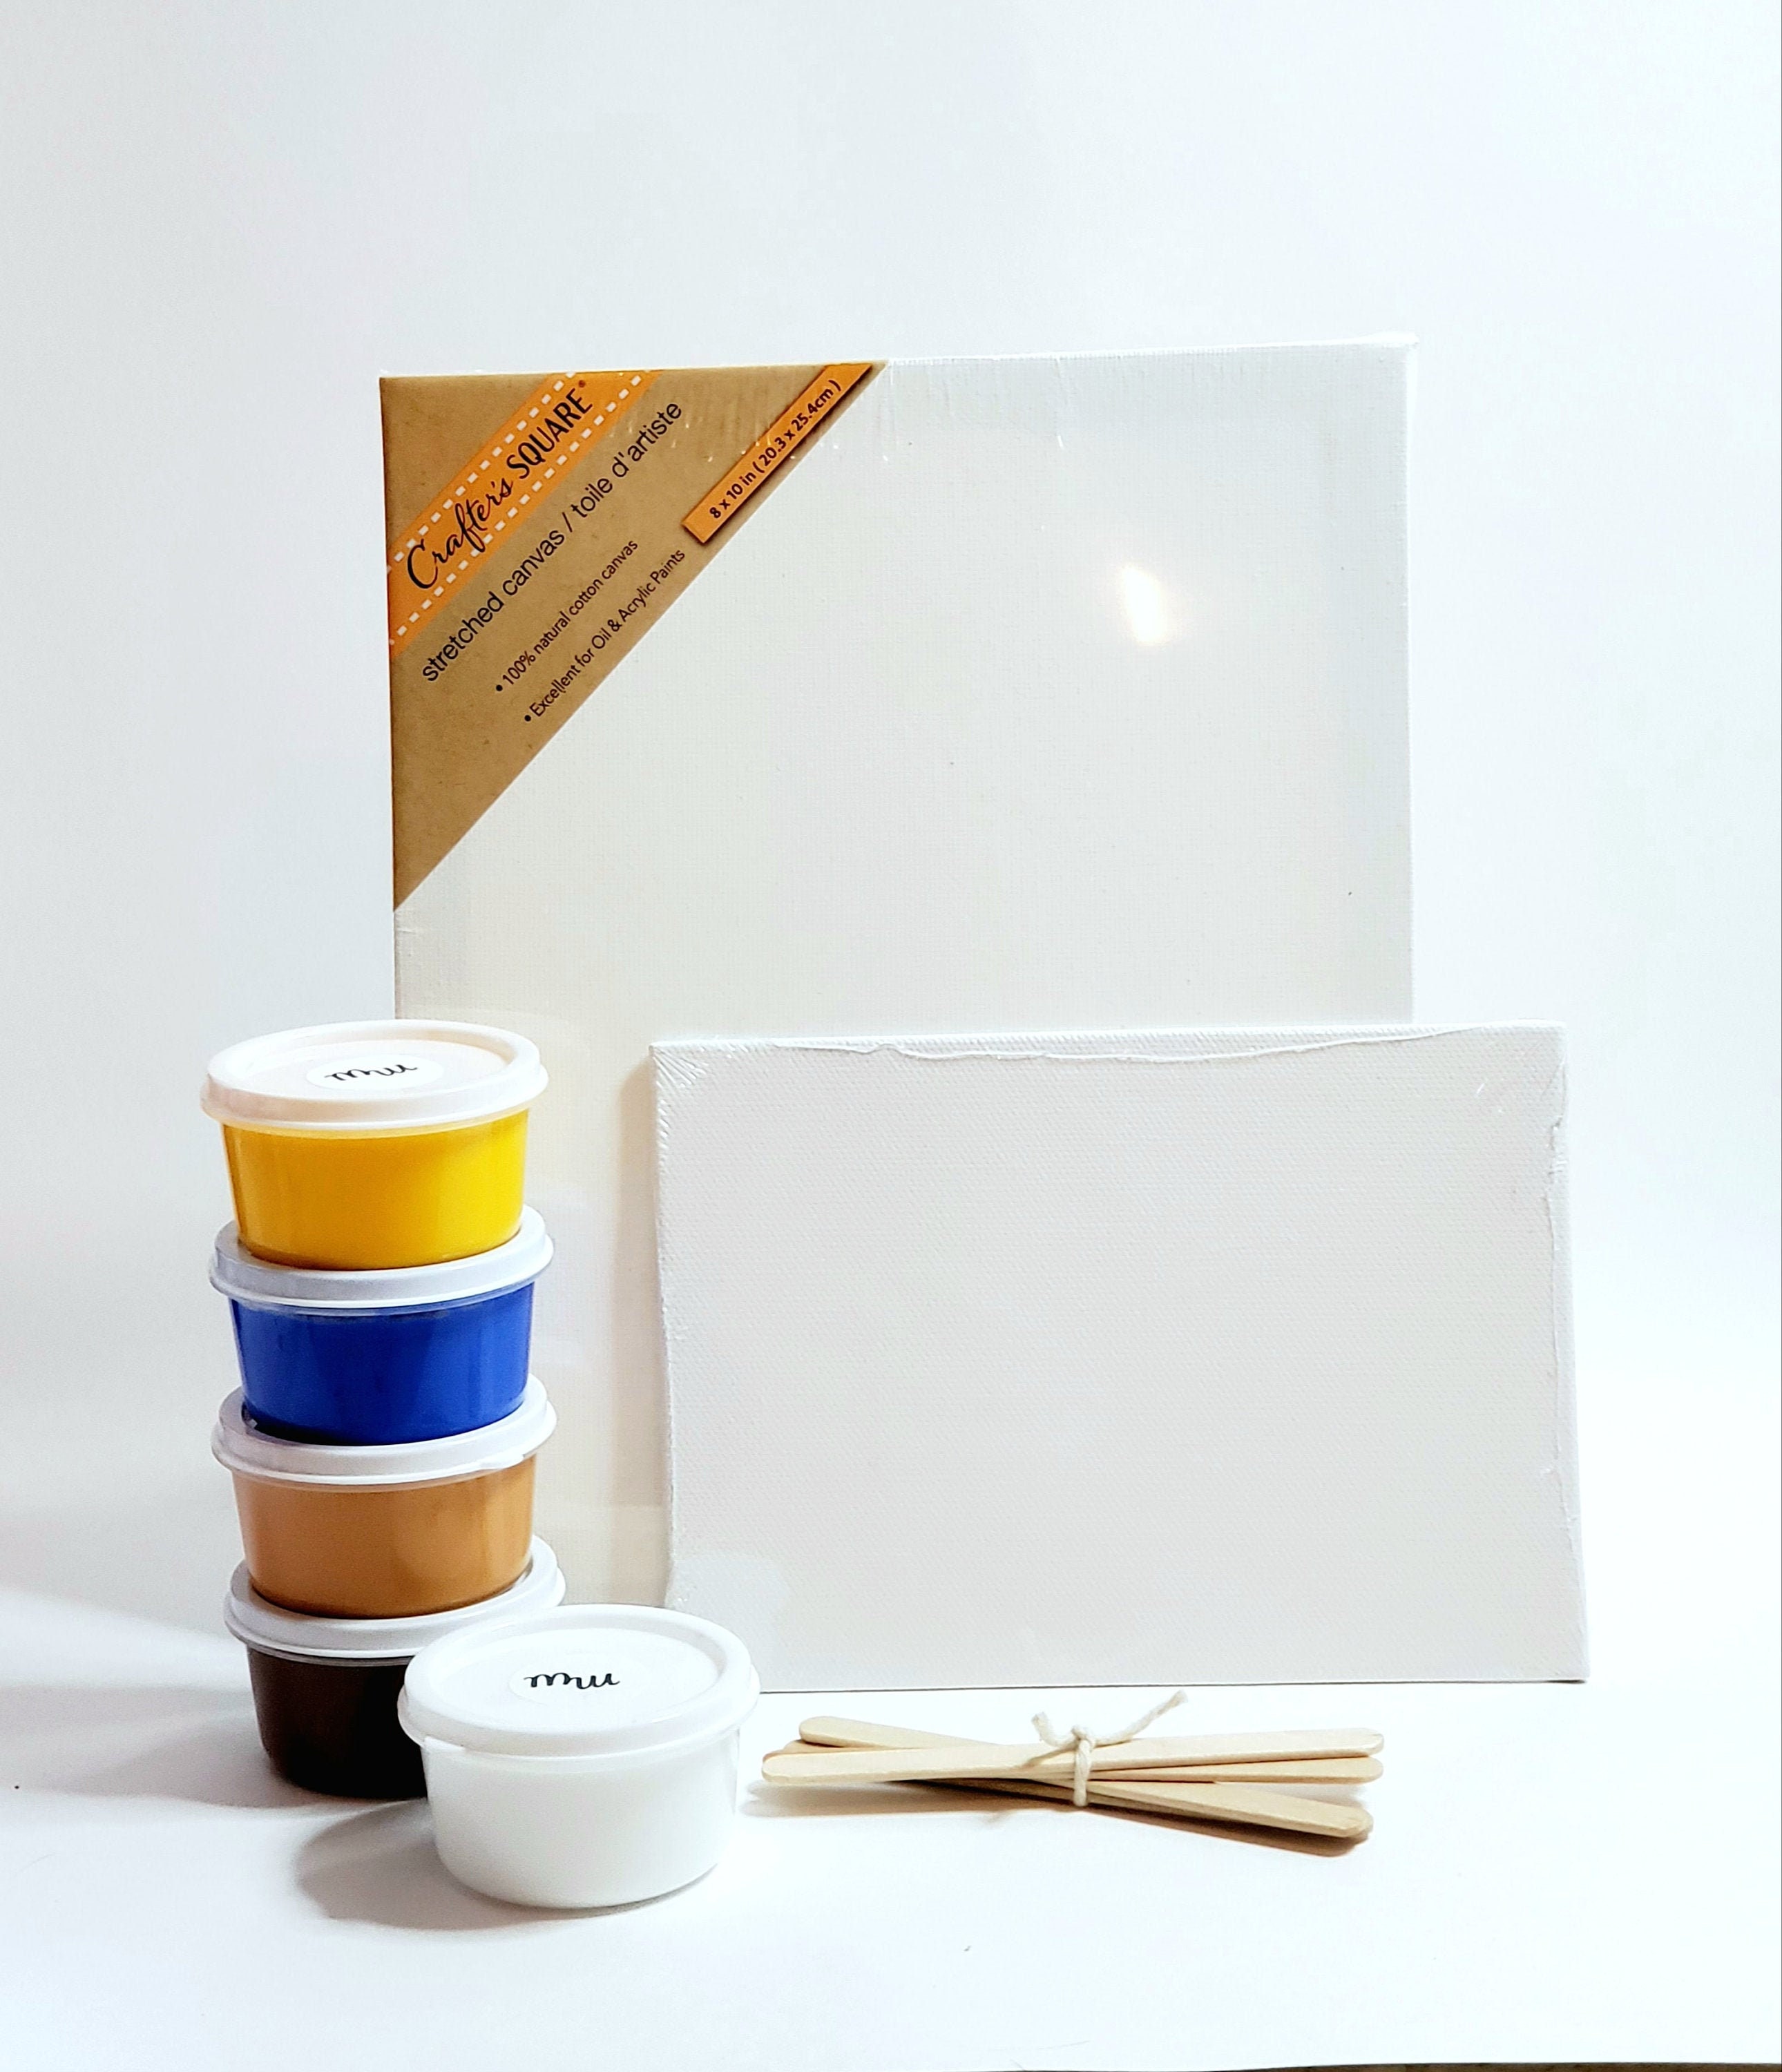 Fluid Pour Painting Kit Acrylic Pour Fluid Painting Art Kit 